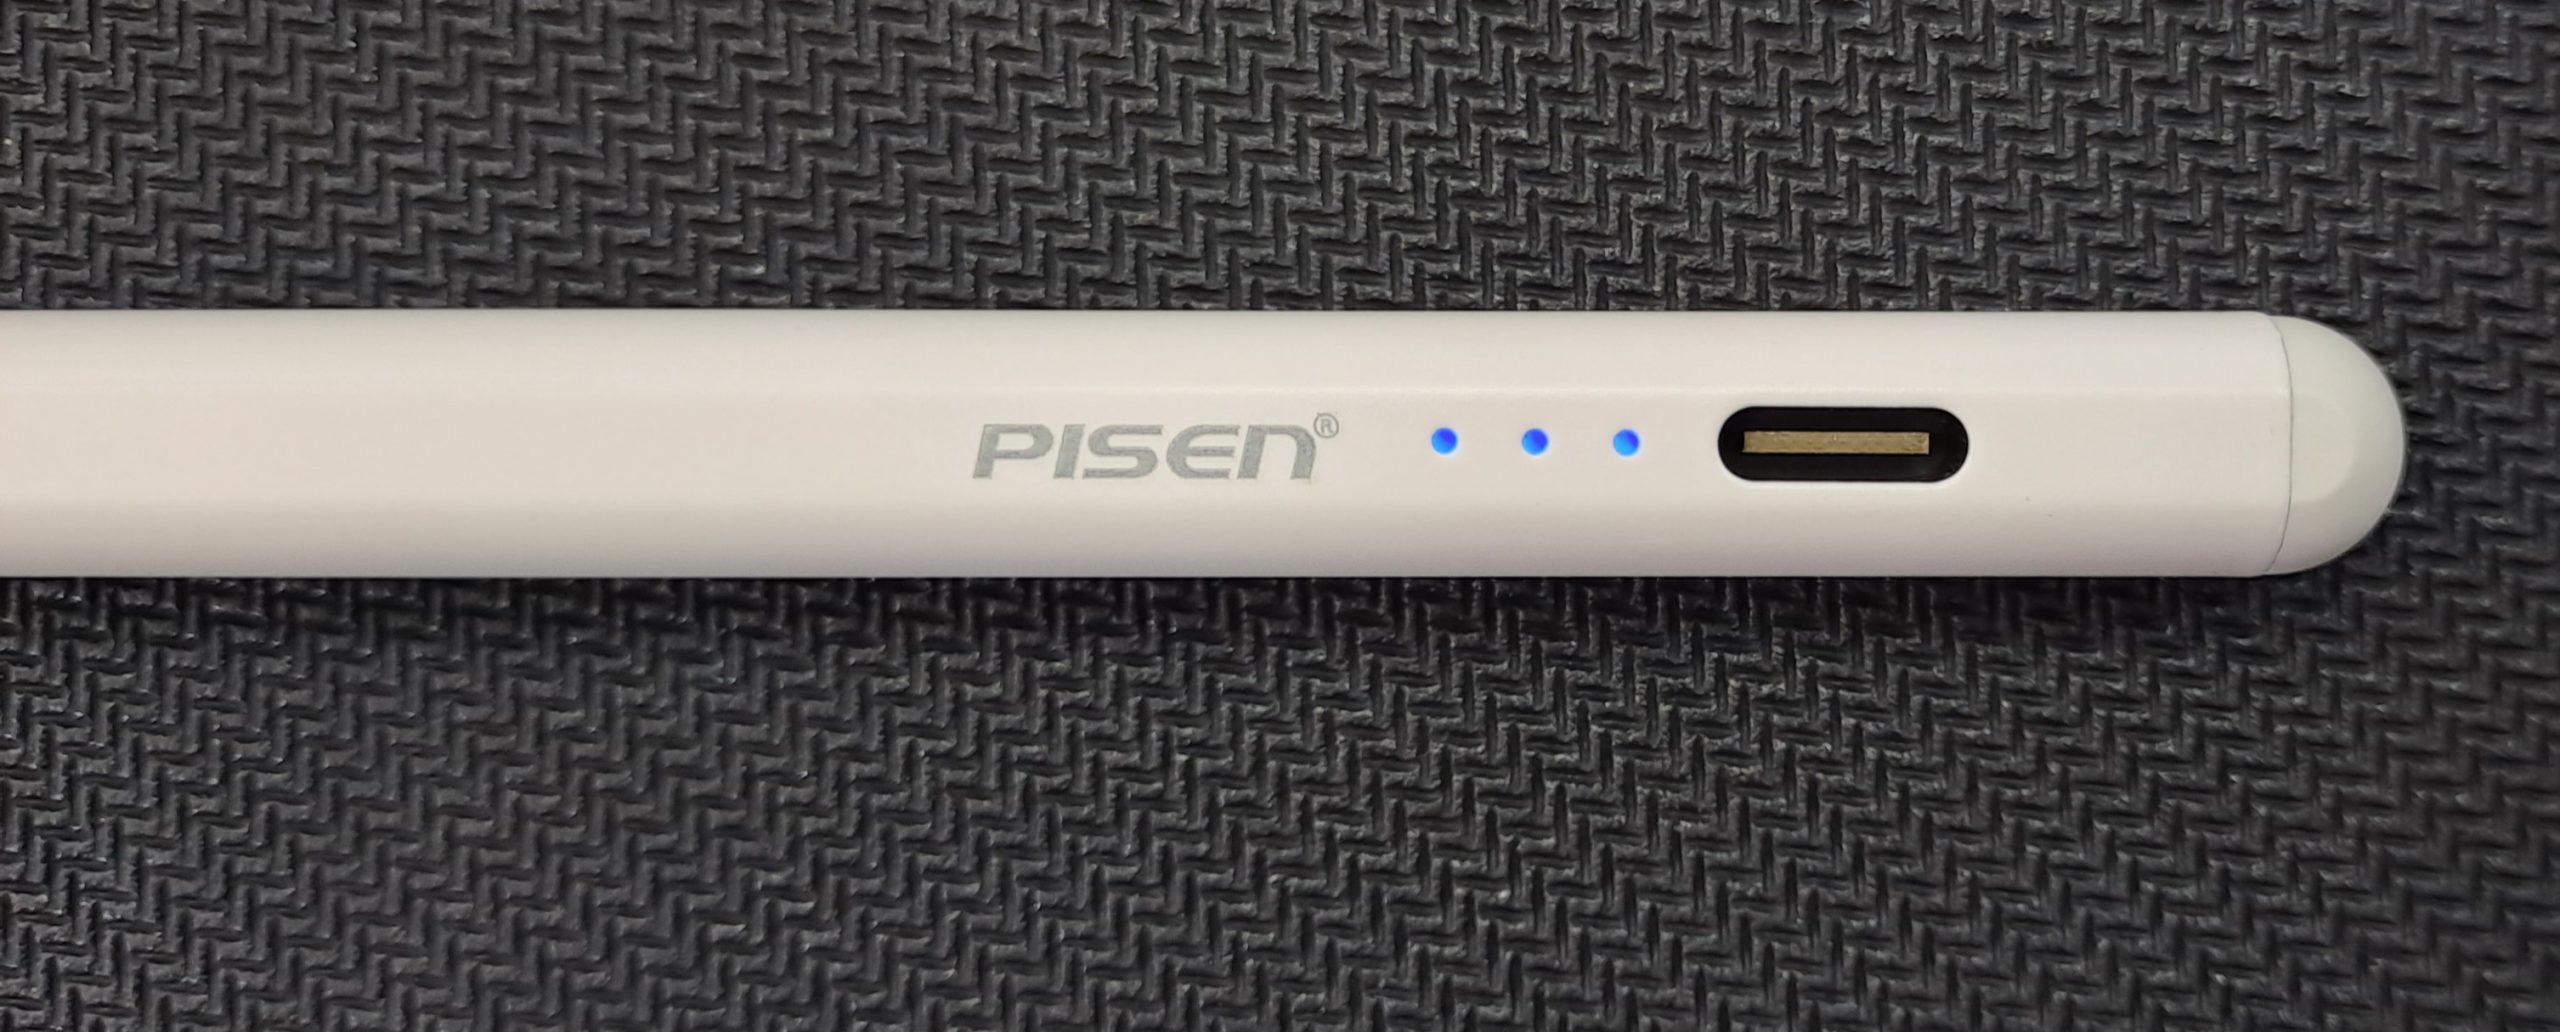 Pisen capacitive touch pen - aluminum alloy body - Type-c charging interface - 130 mAH battery capacity - HJ-OP109 - Amman Jordan - Pccircle 